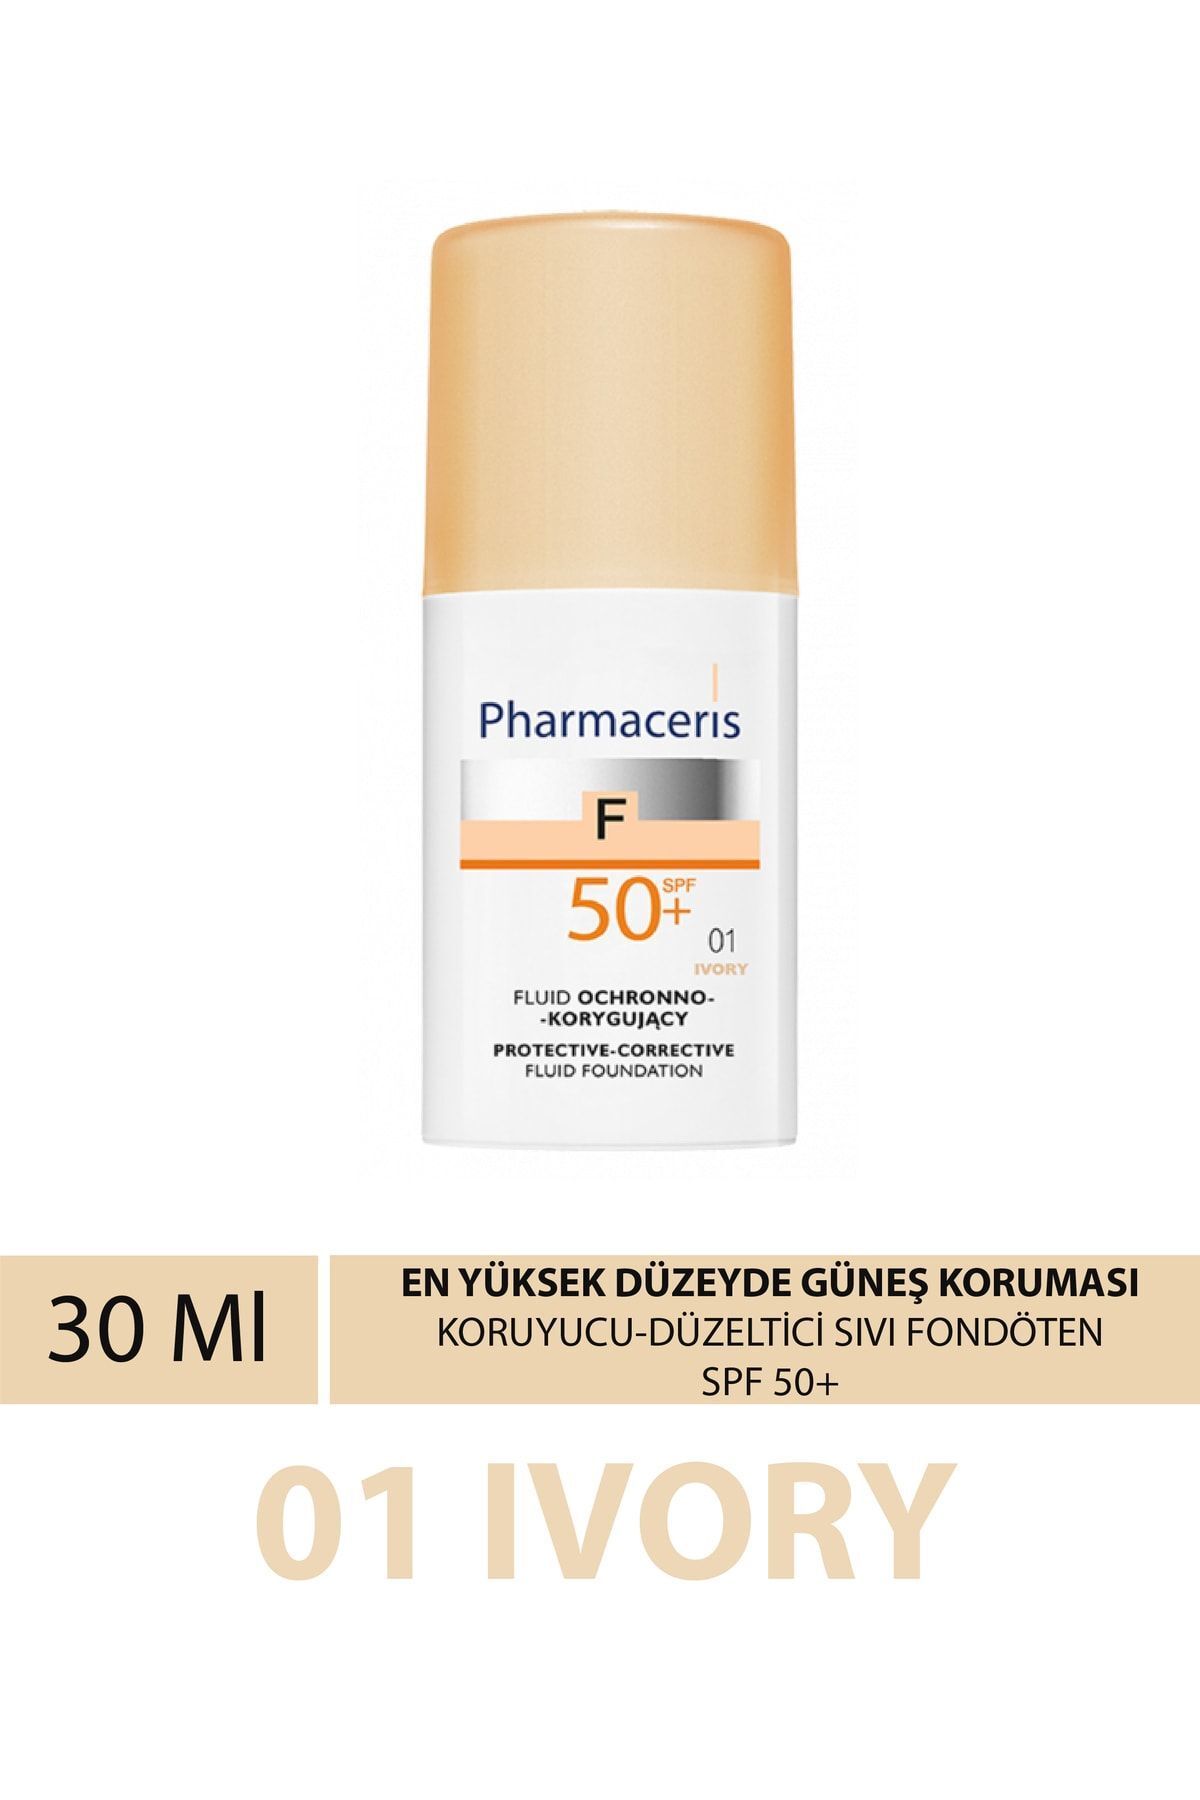 Pharmaceris Koruyucu Düzeltici Sıvı Fondöten En Yüksek Düzeyde Güneş Koruması Spf 50+ 01 Ivory